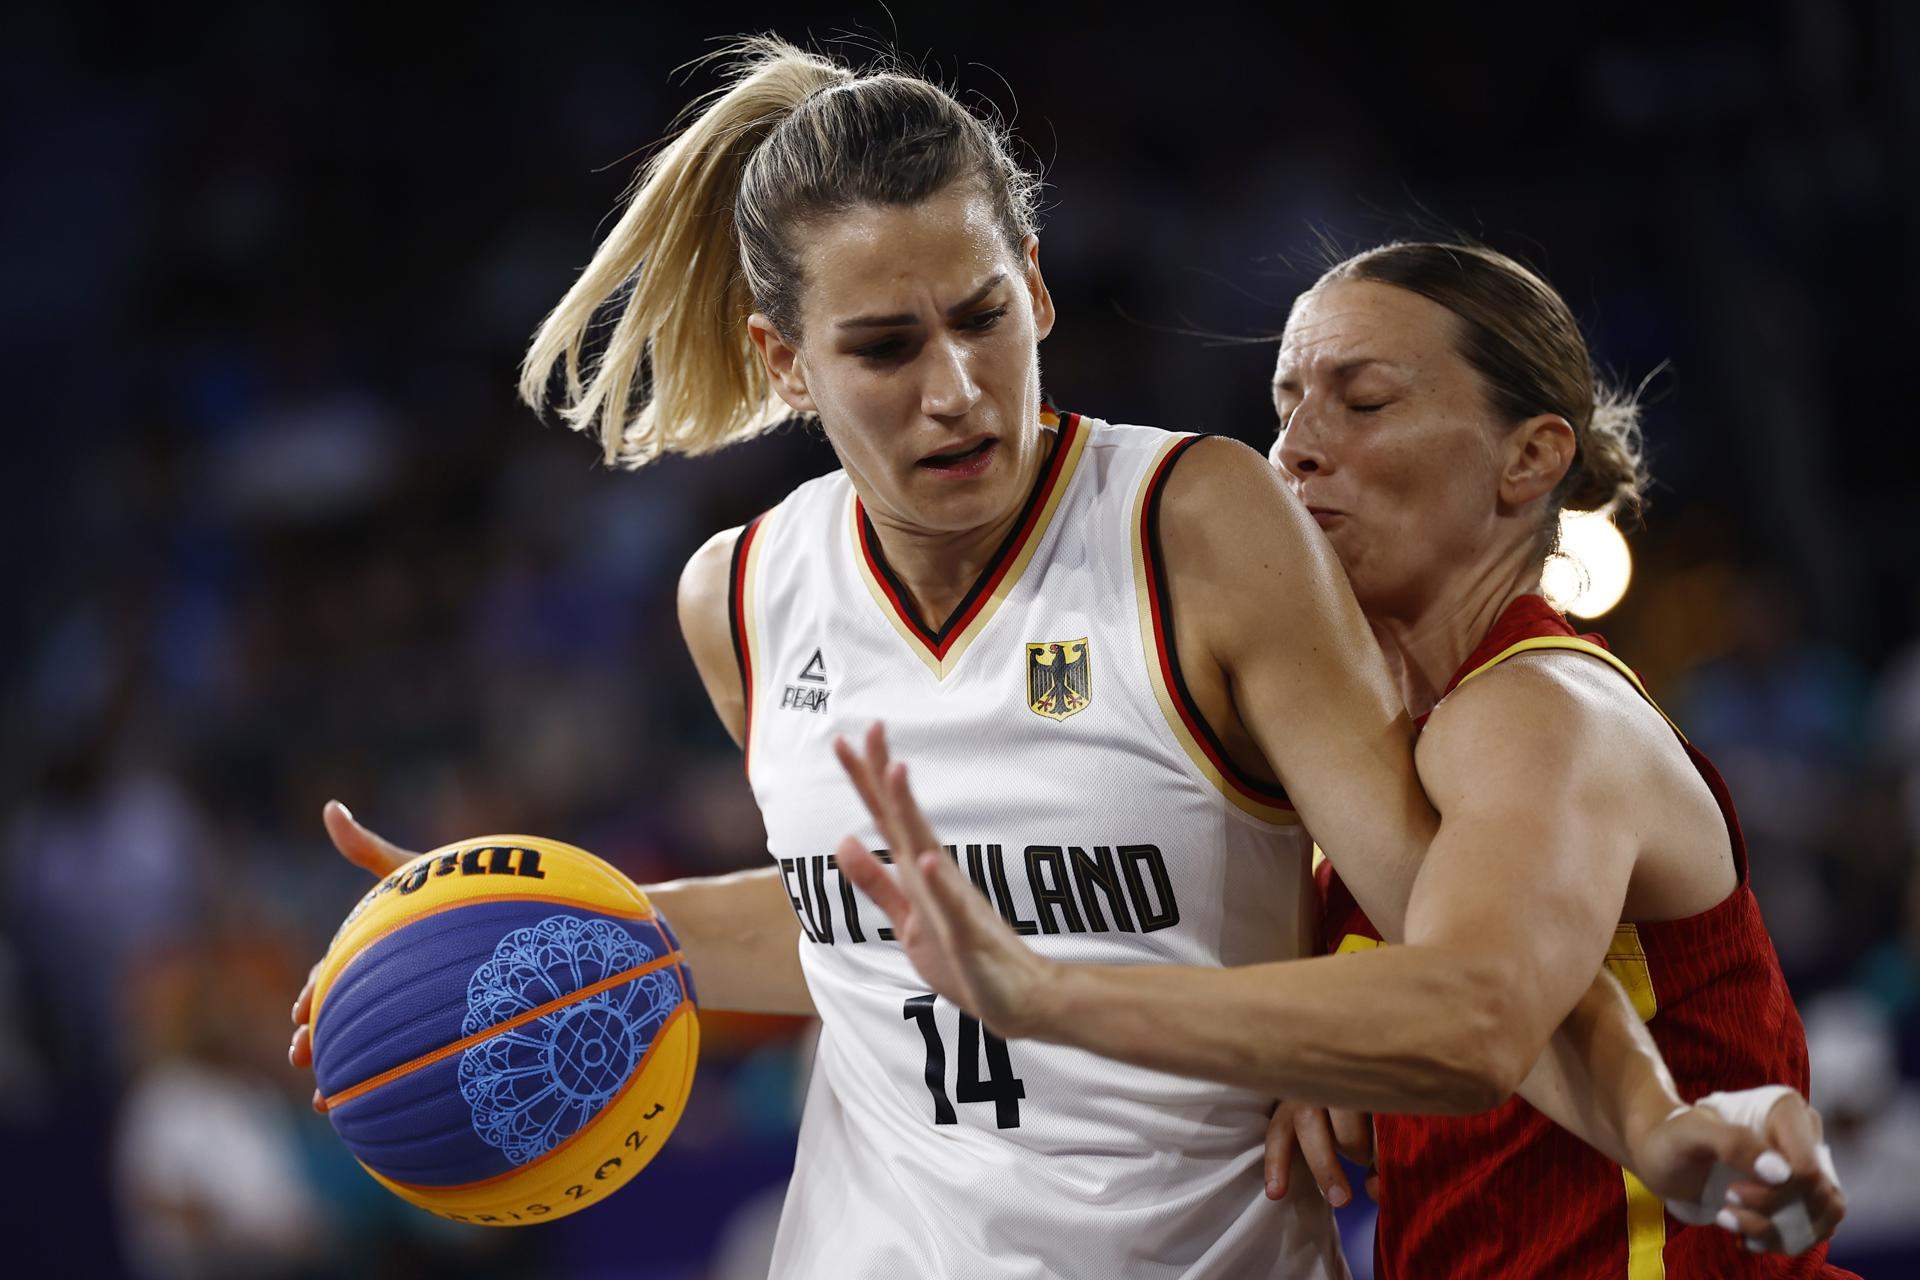 España no culmina el milagro contra Alemania (17-16) y suma una medalla de plata en baloncesto femenino 3x3